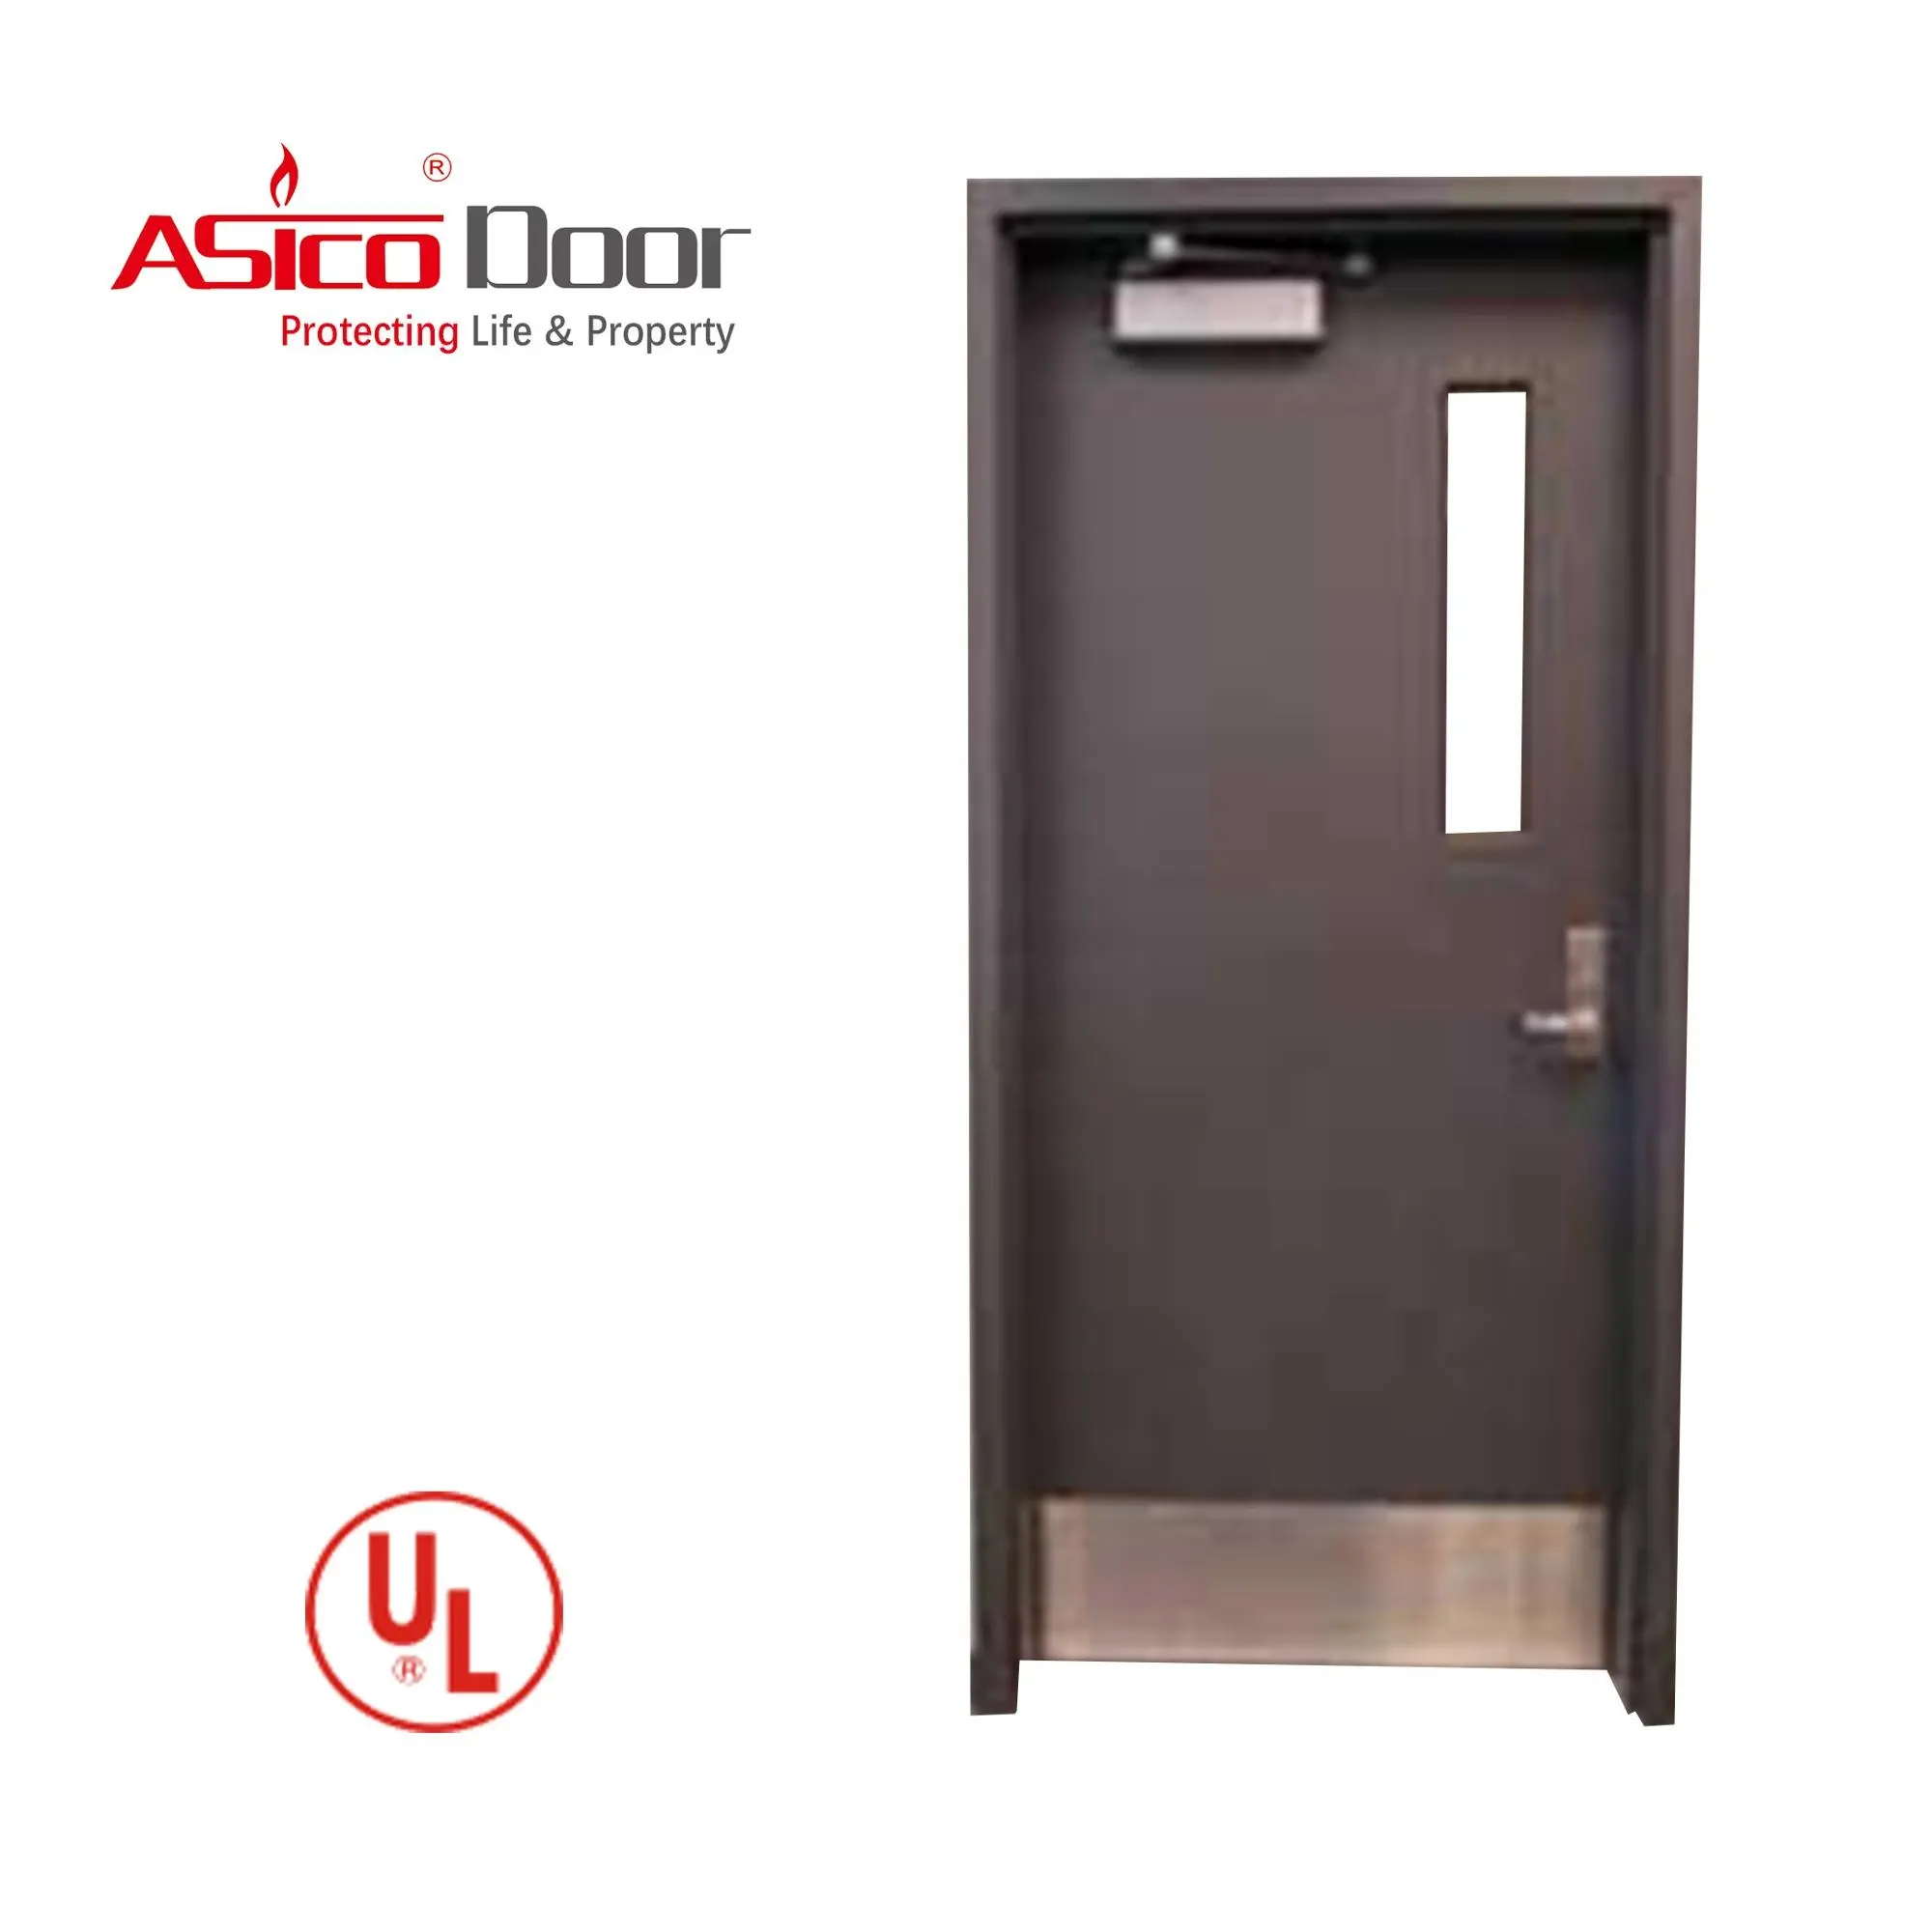 ASICO UL-puerta de Hotel con inserto de vidrio, puerta de acero antifuego tasada 30 a 180 Min, para Hotel